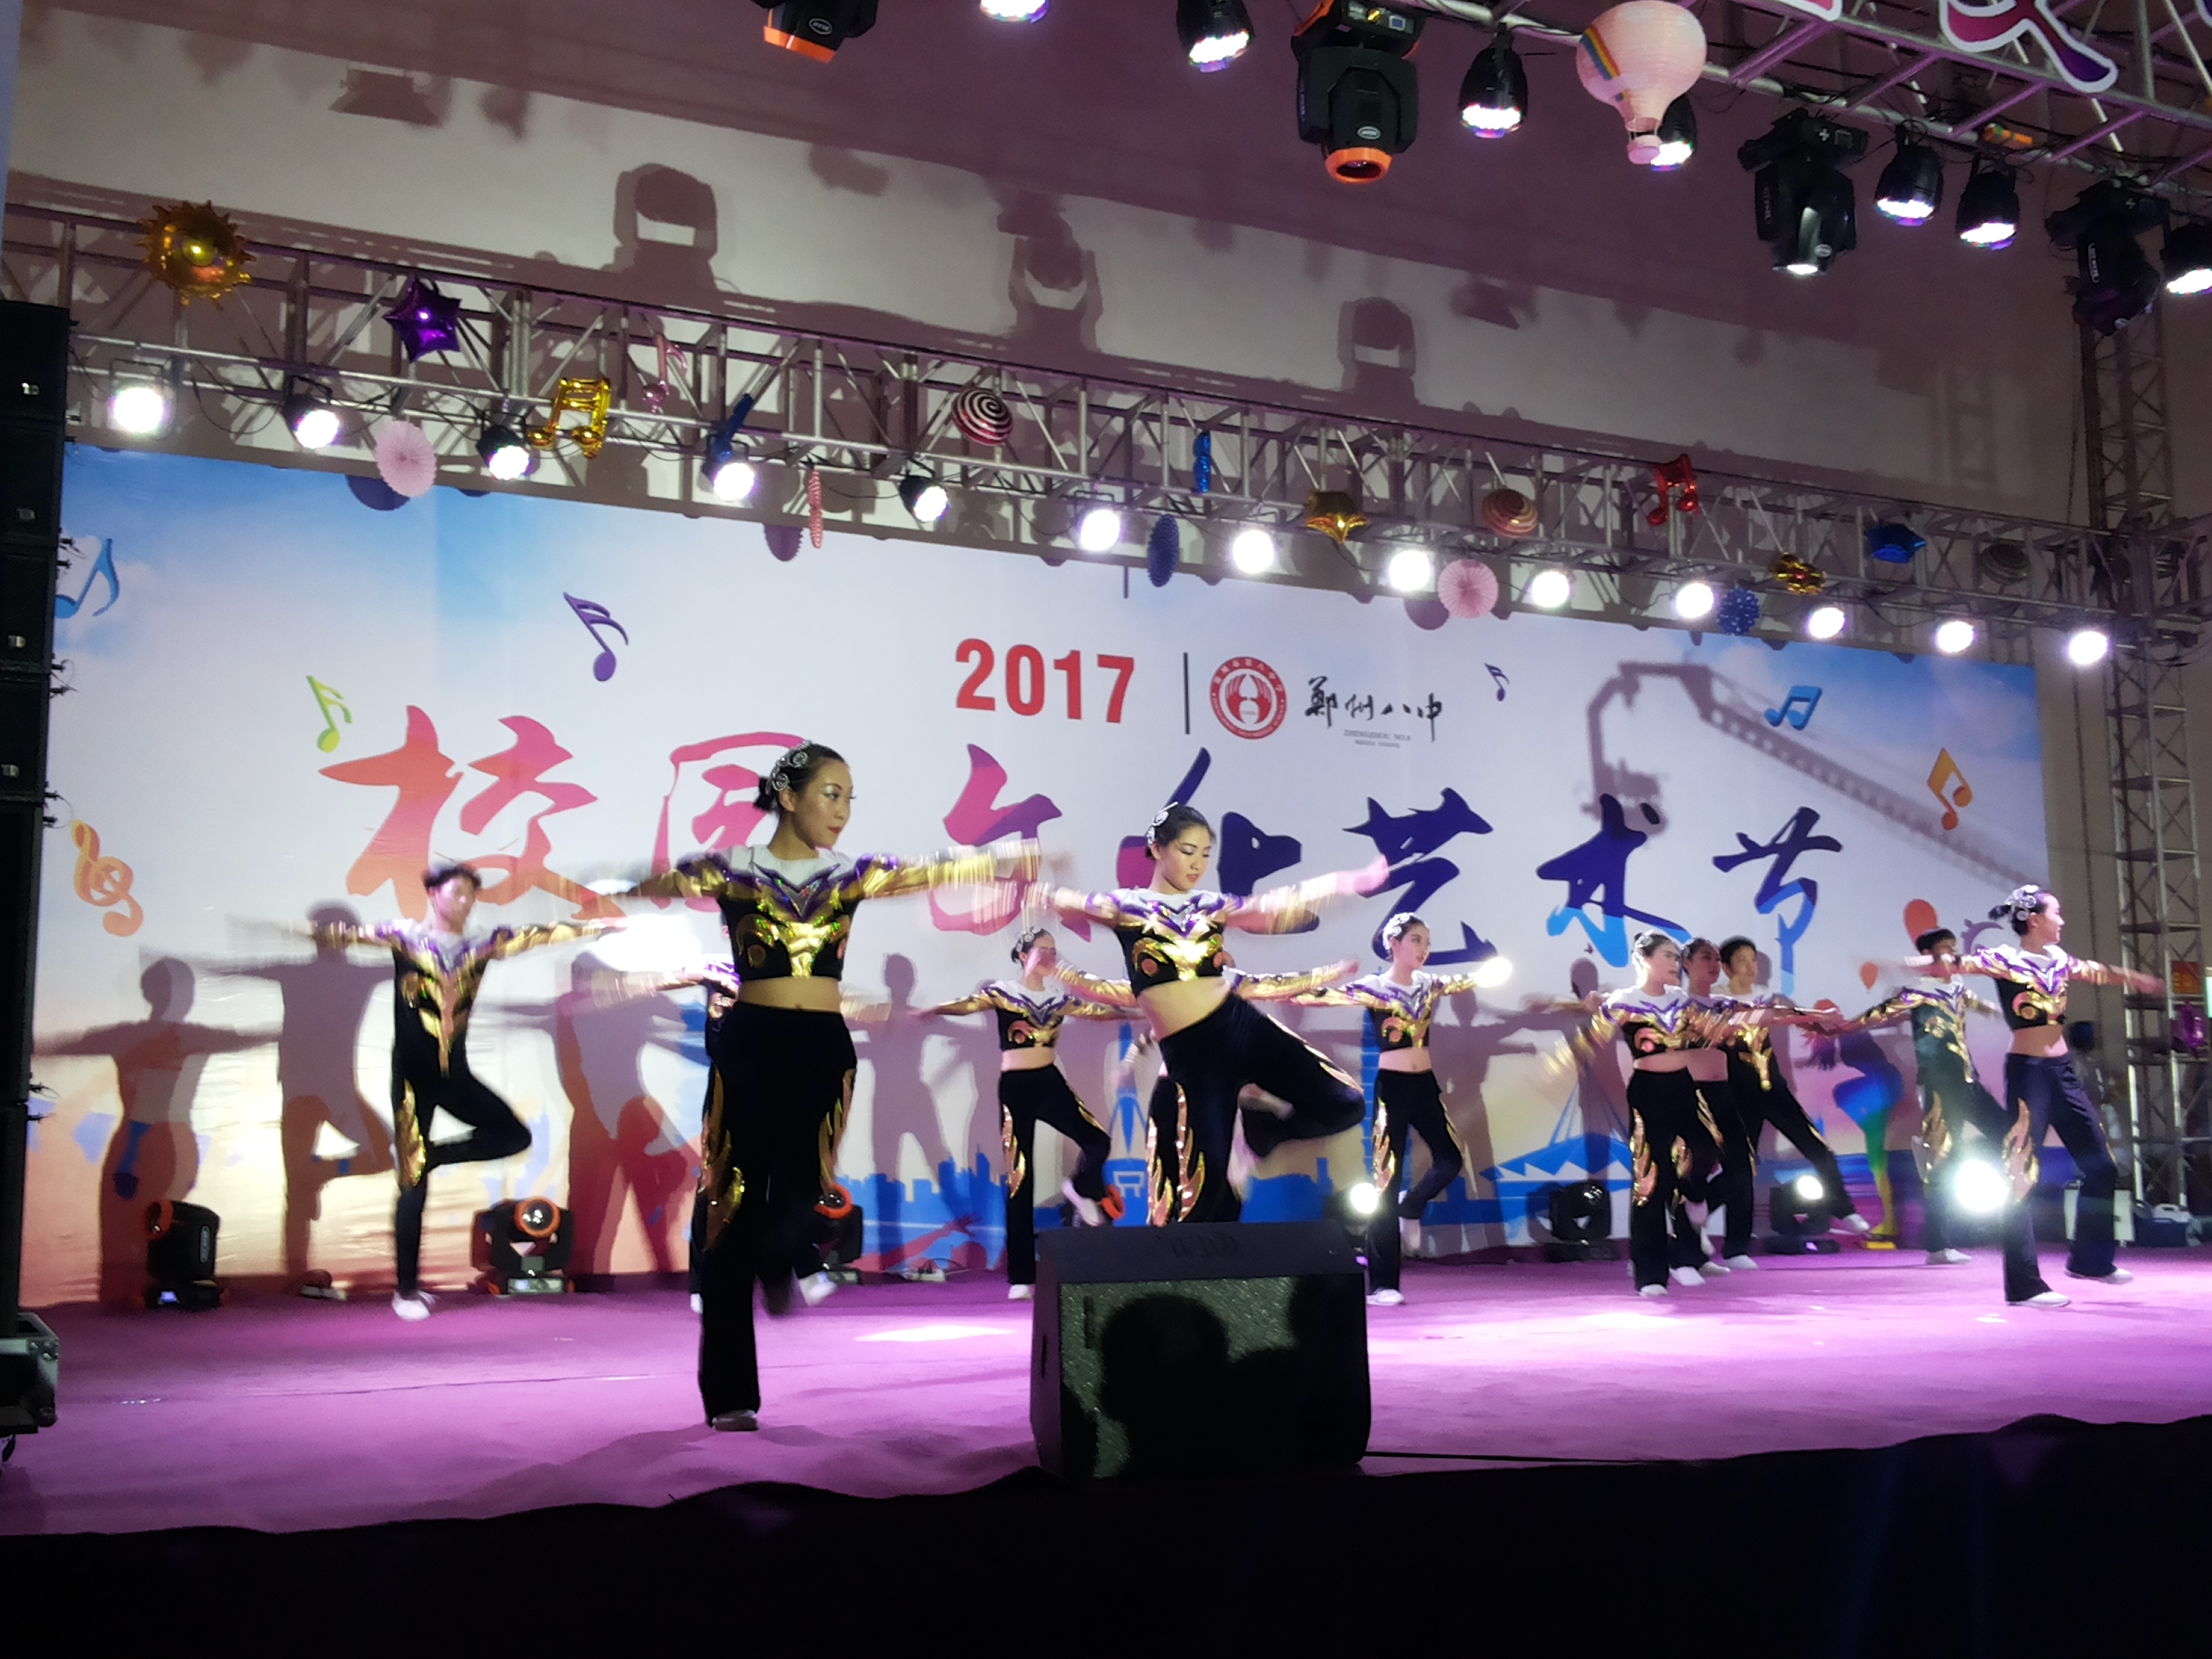 歌曲,情景剧,丝绣 郑州八中2017校园文化艺术节展演异彩纷呈